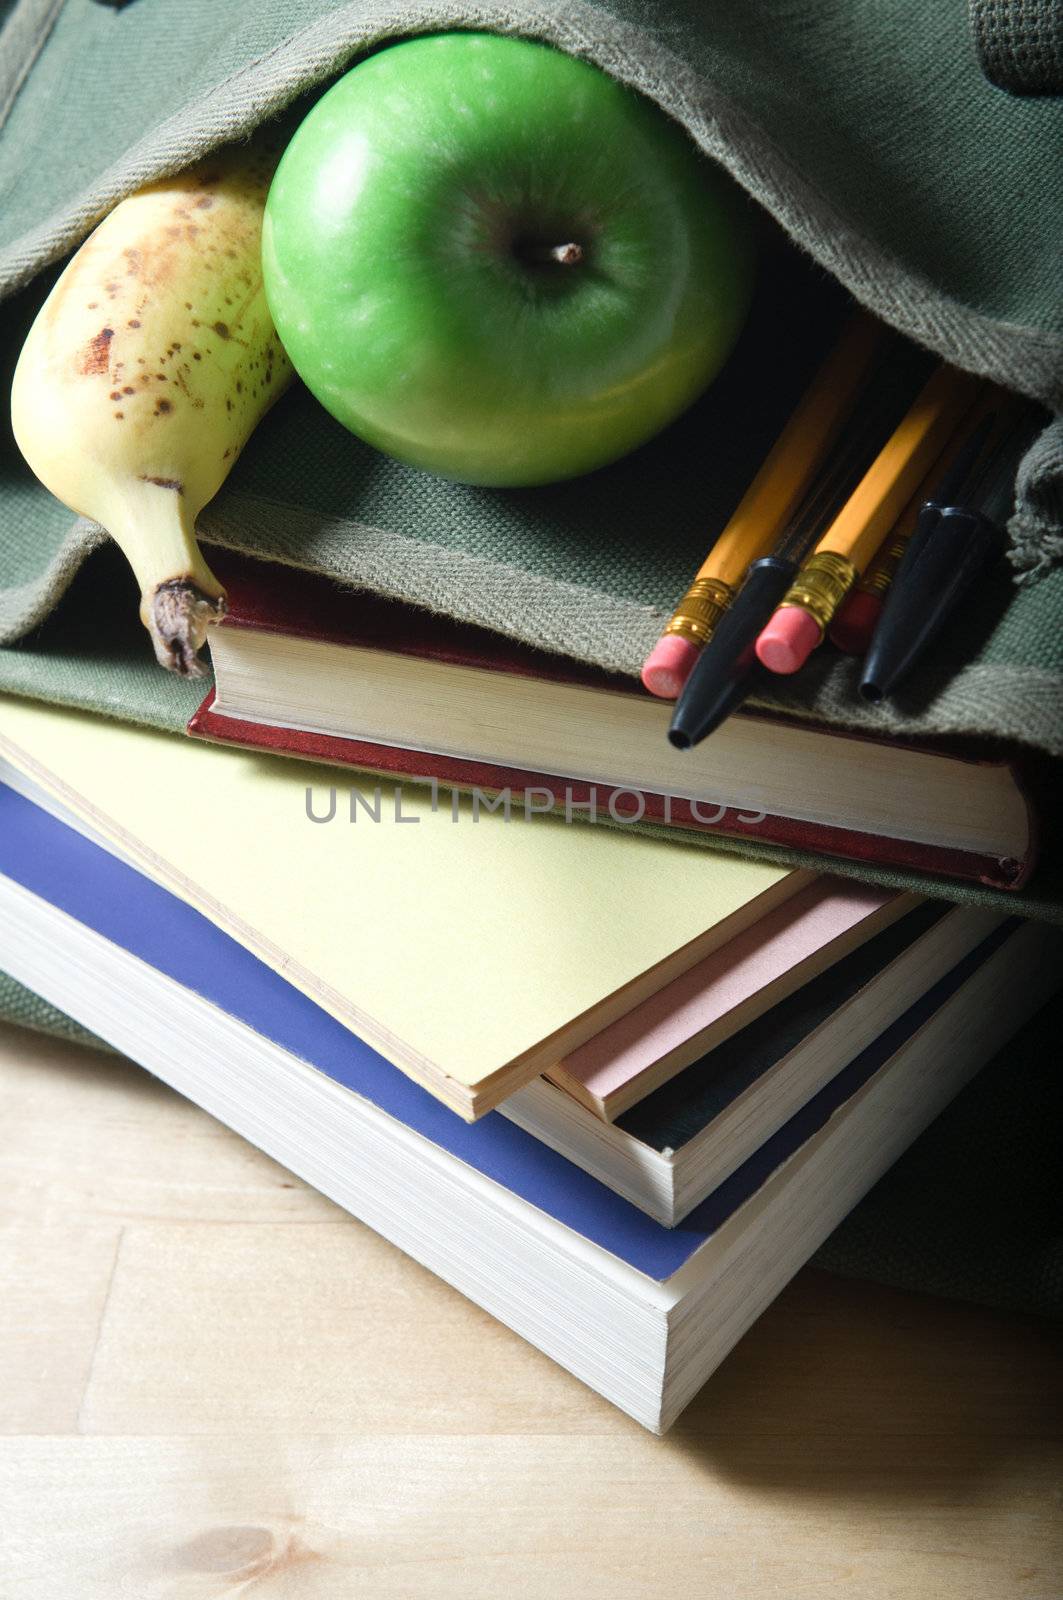 An open school satchel, containing books, pens, pencils and fruit.  Vertical (portrait) orientation.